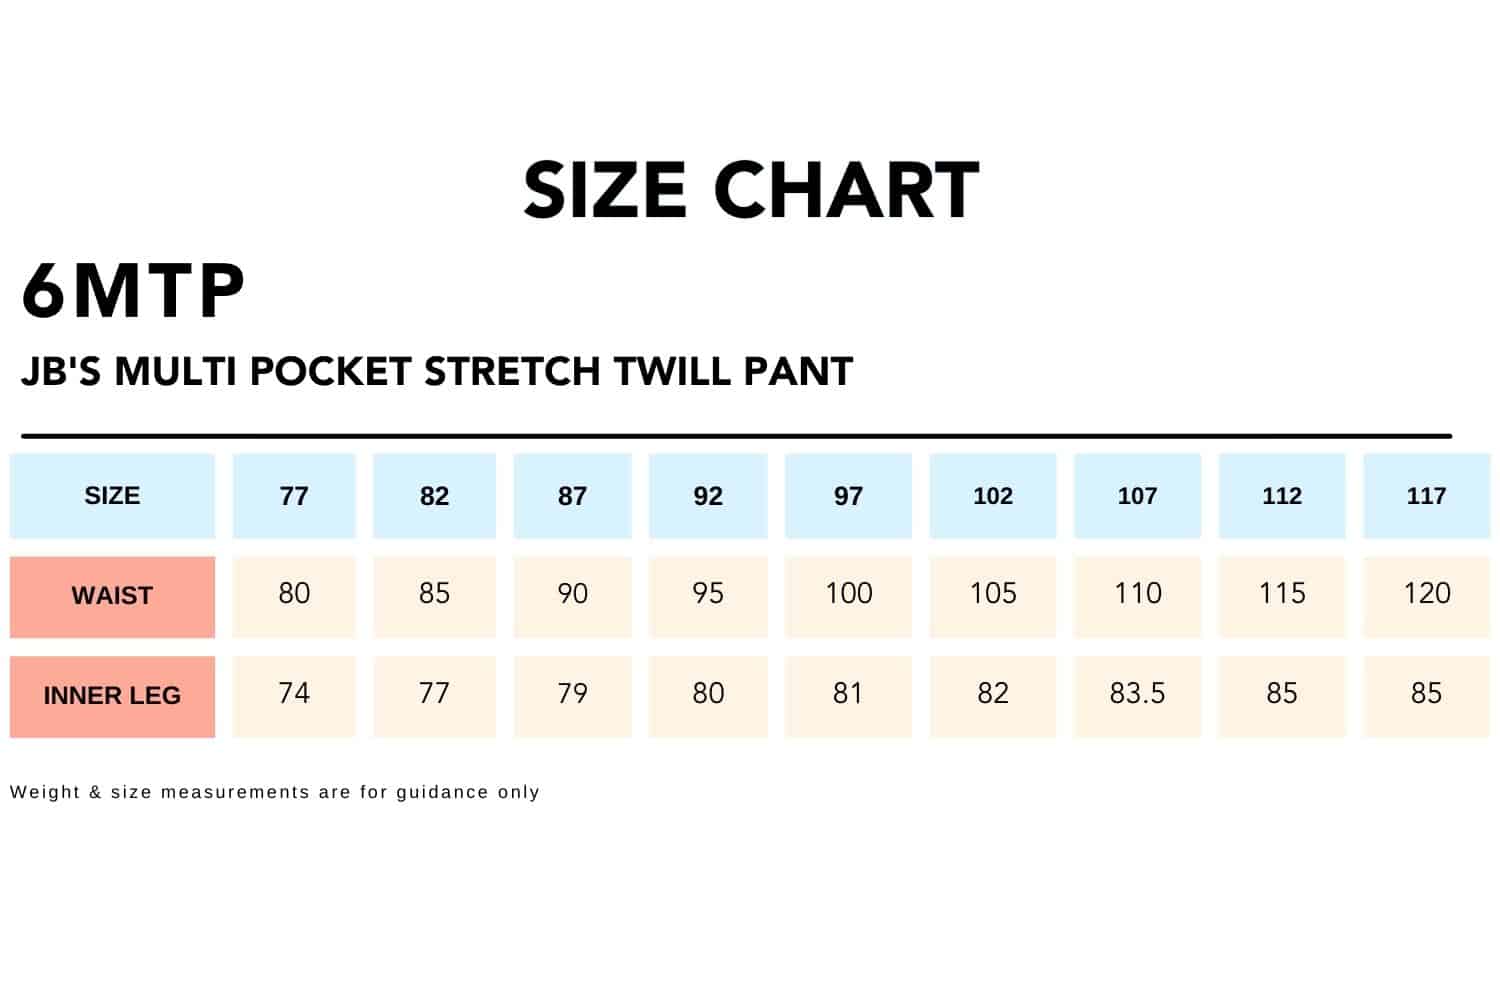 Size Chart_6MTP JB'S MULTI POCKET STRETCH TWILL PANT